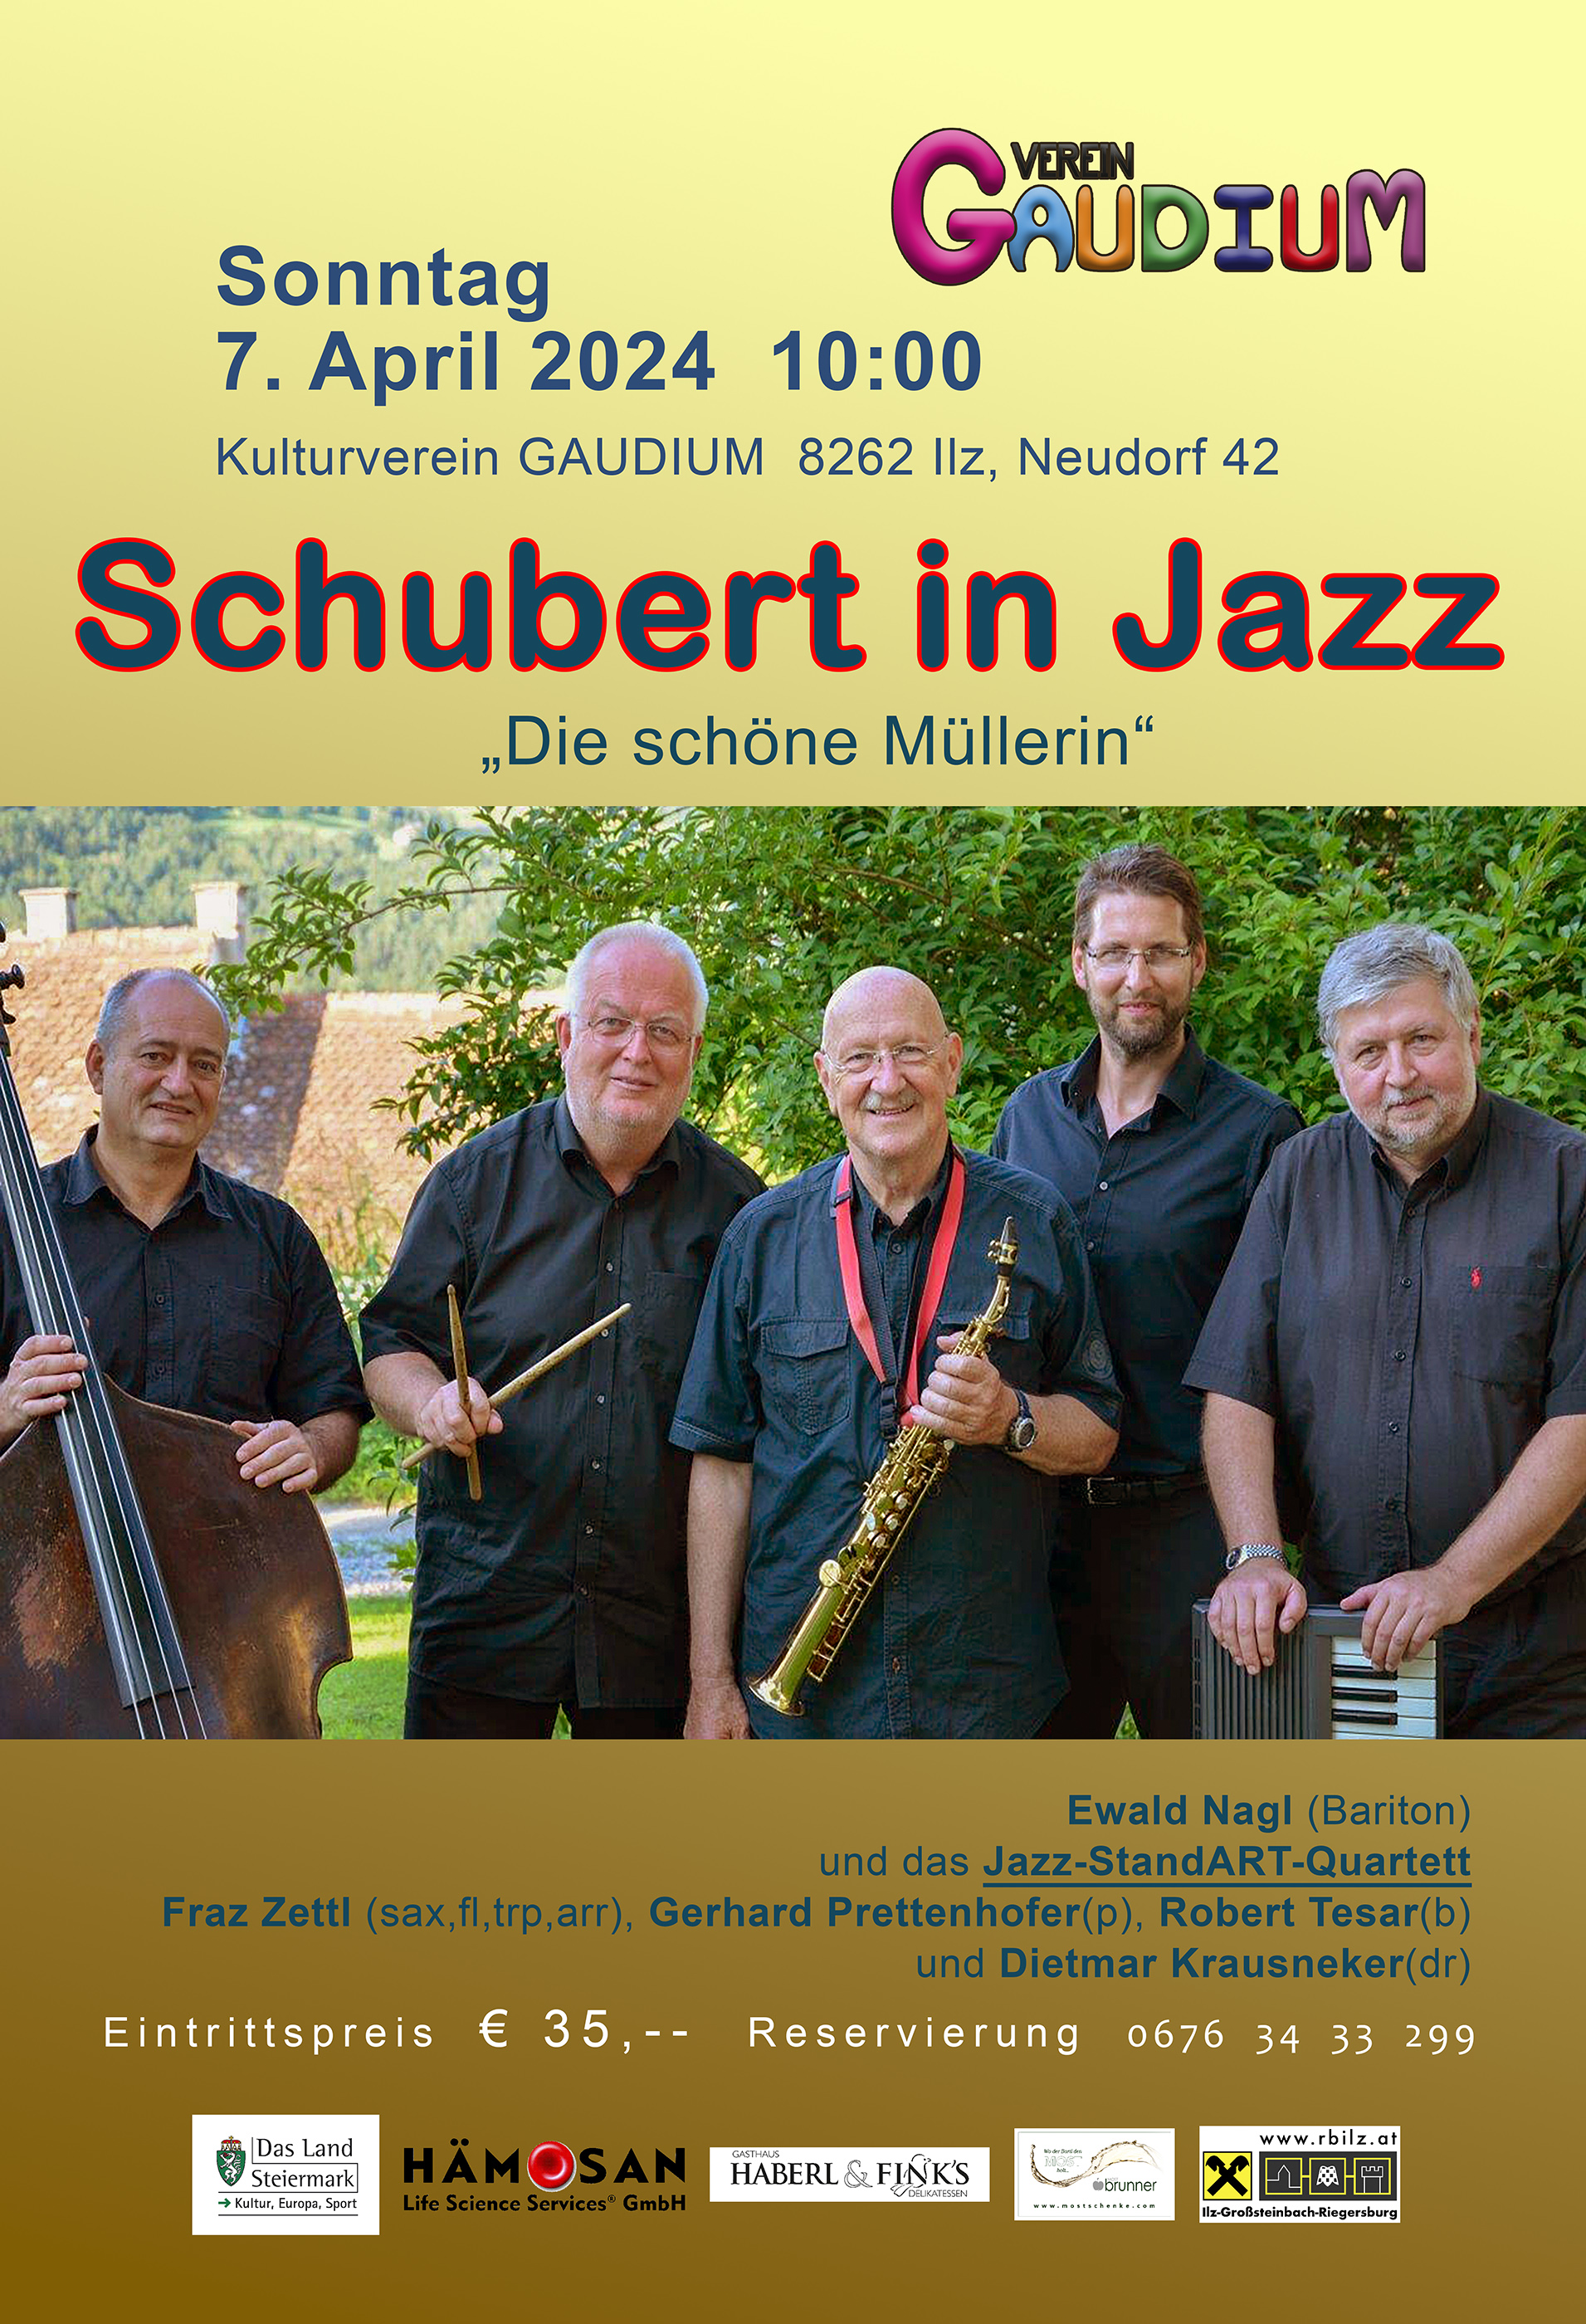 Schubert in Jazz